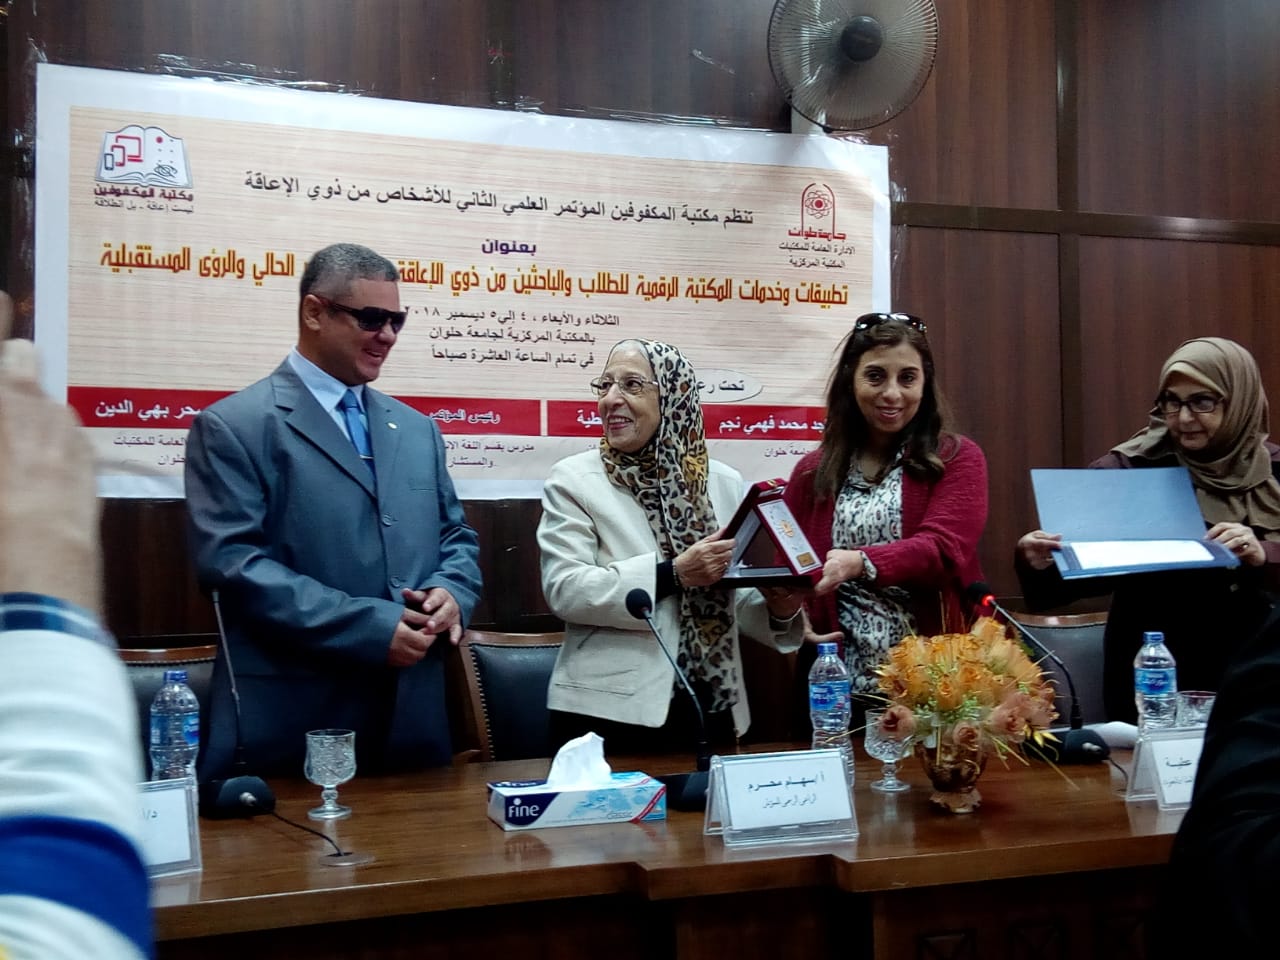 انطلاق اليوم الأول من فاعليات المؤتمر العلمى الثانى لذوى الاحتياجات الخاصة بجامعة حلوان (2)